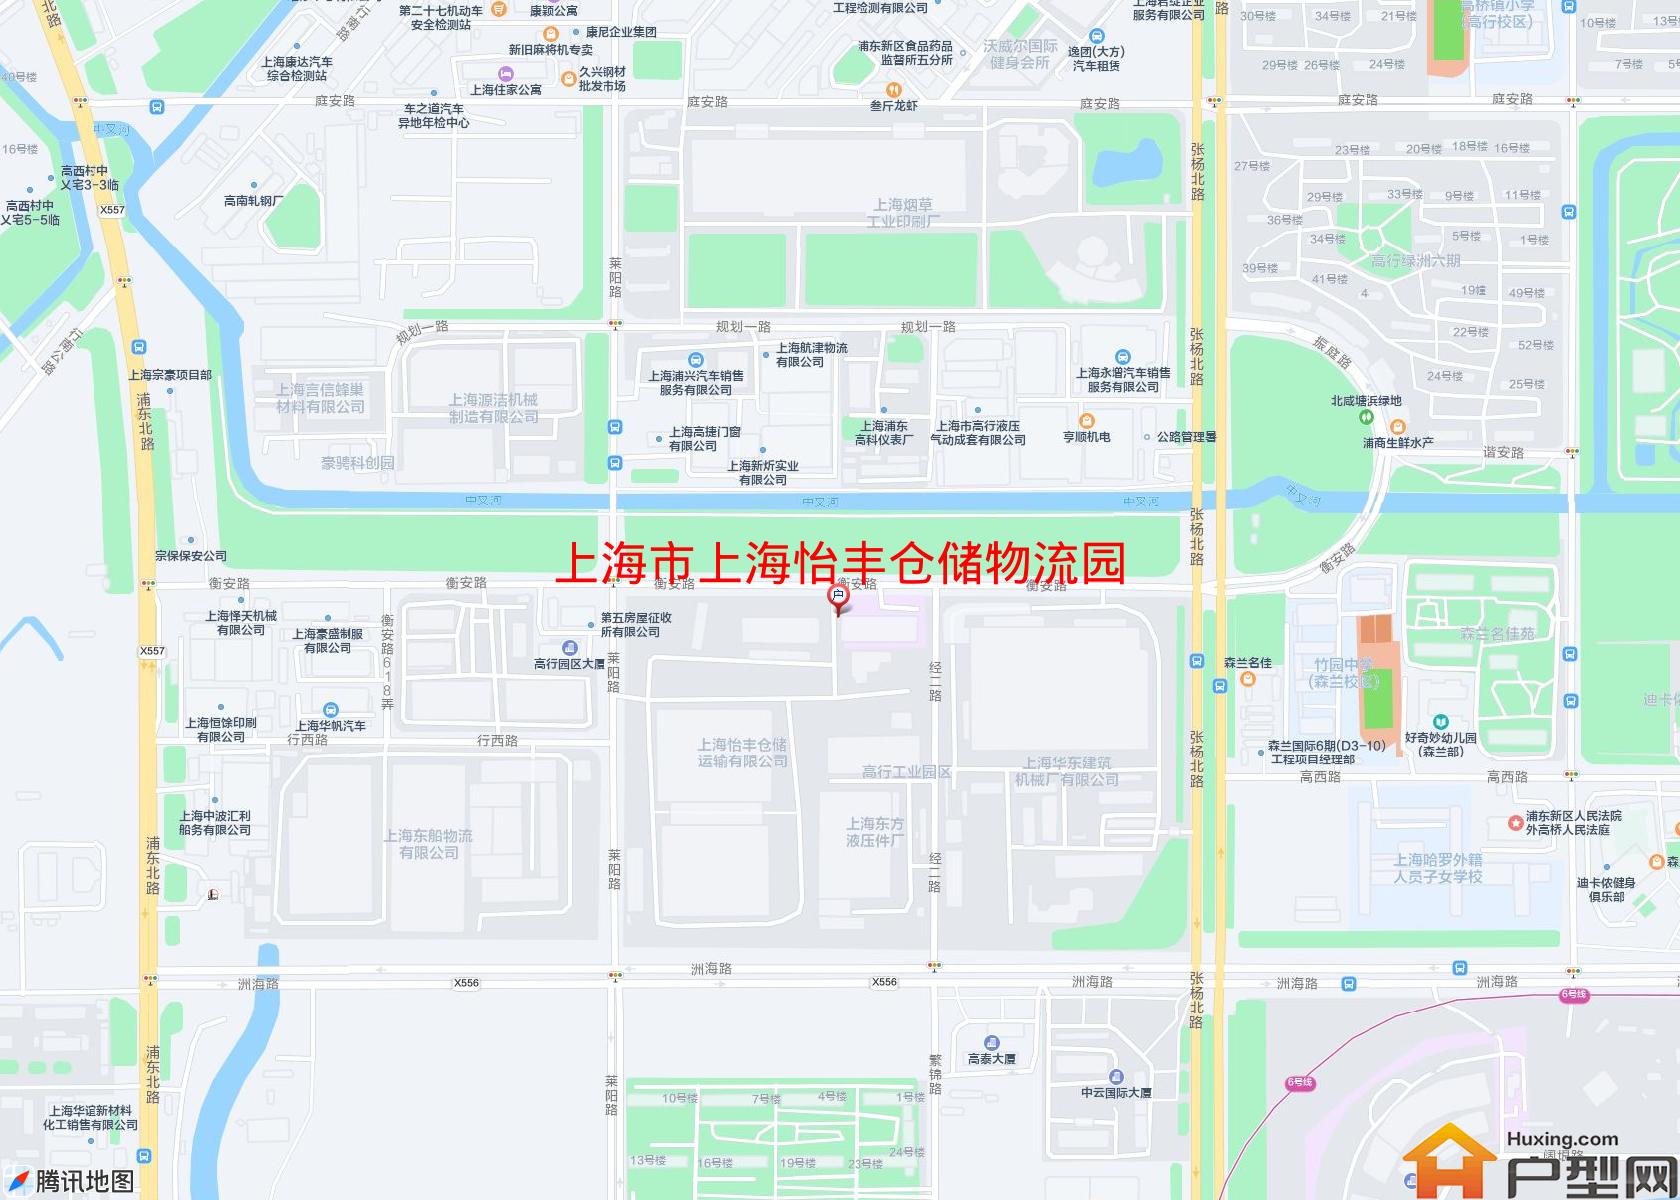 上海怡丰仓储物流园小区 - 户型网